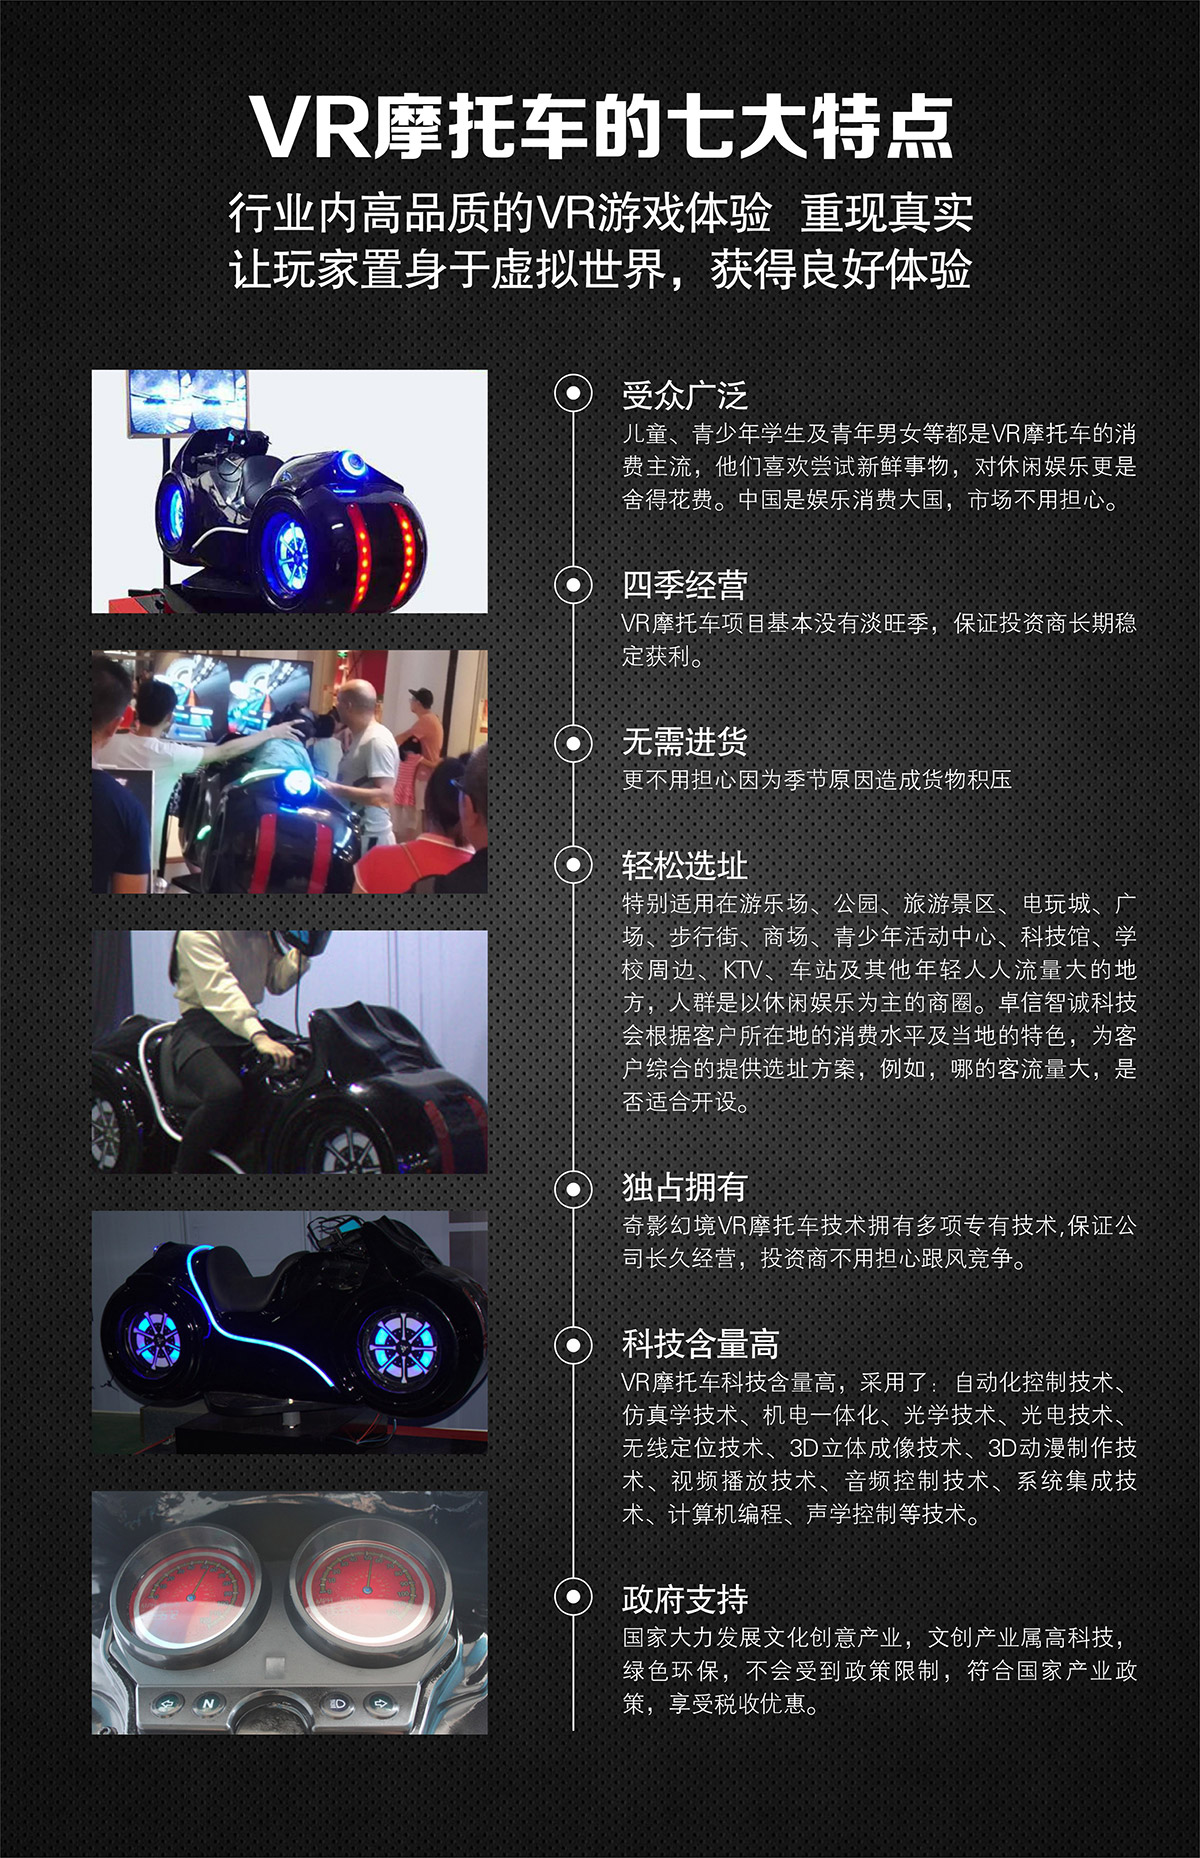 校园安全VR摩托车特点高品质游戏体验.jpg